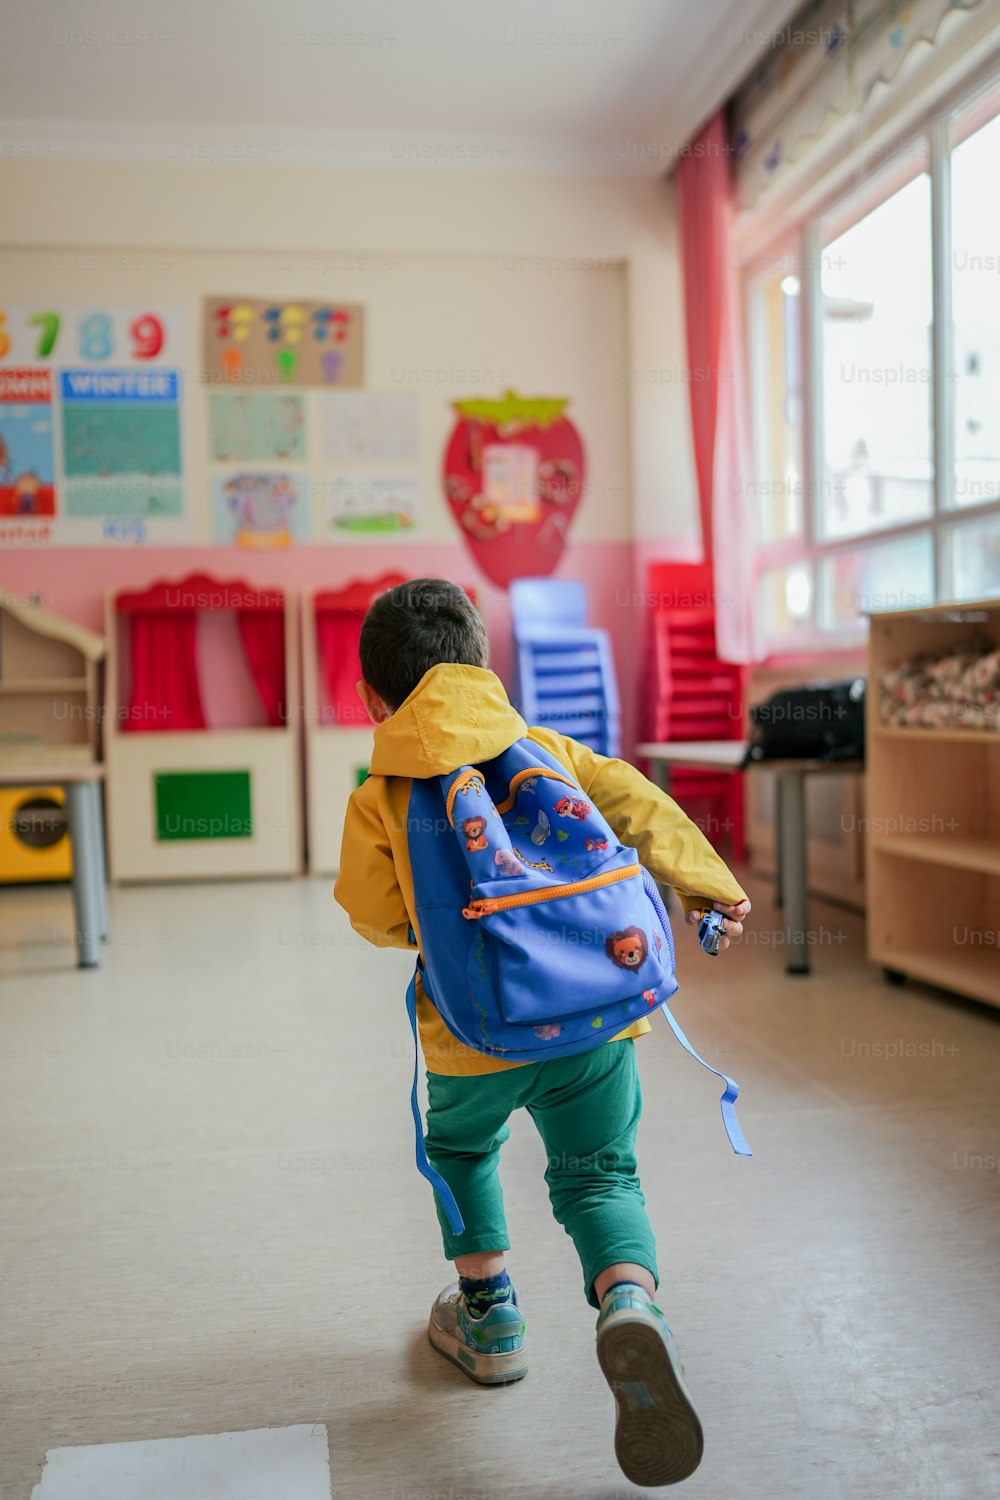 Un niño pequeño con una mochila azul corriendo en una habitación